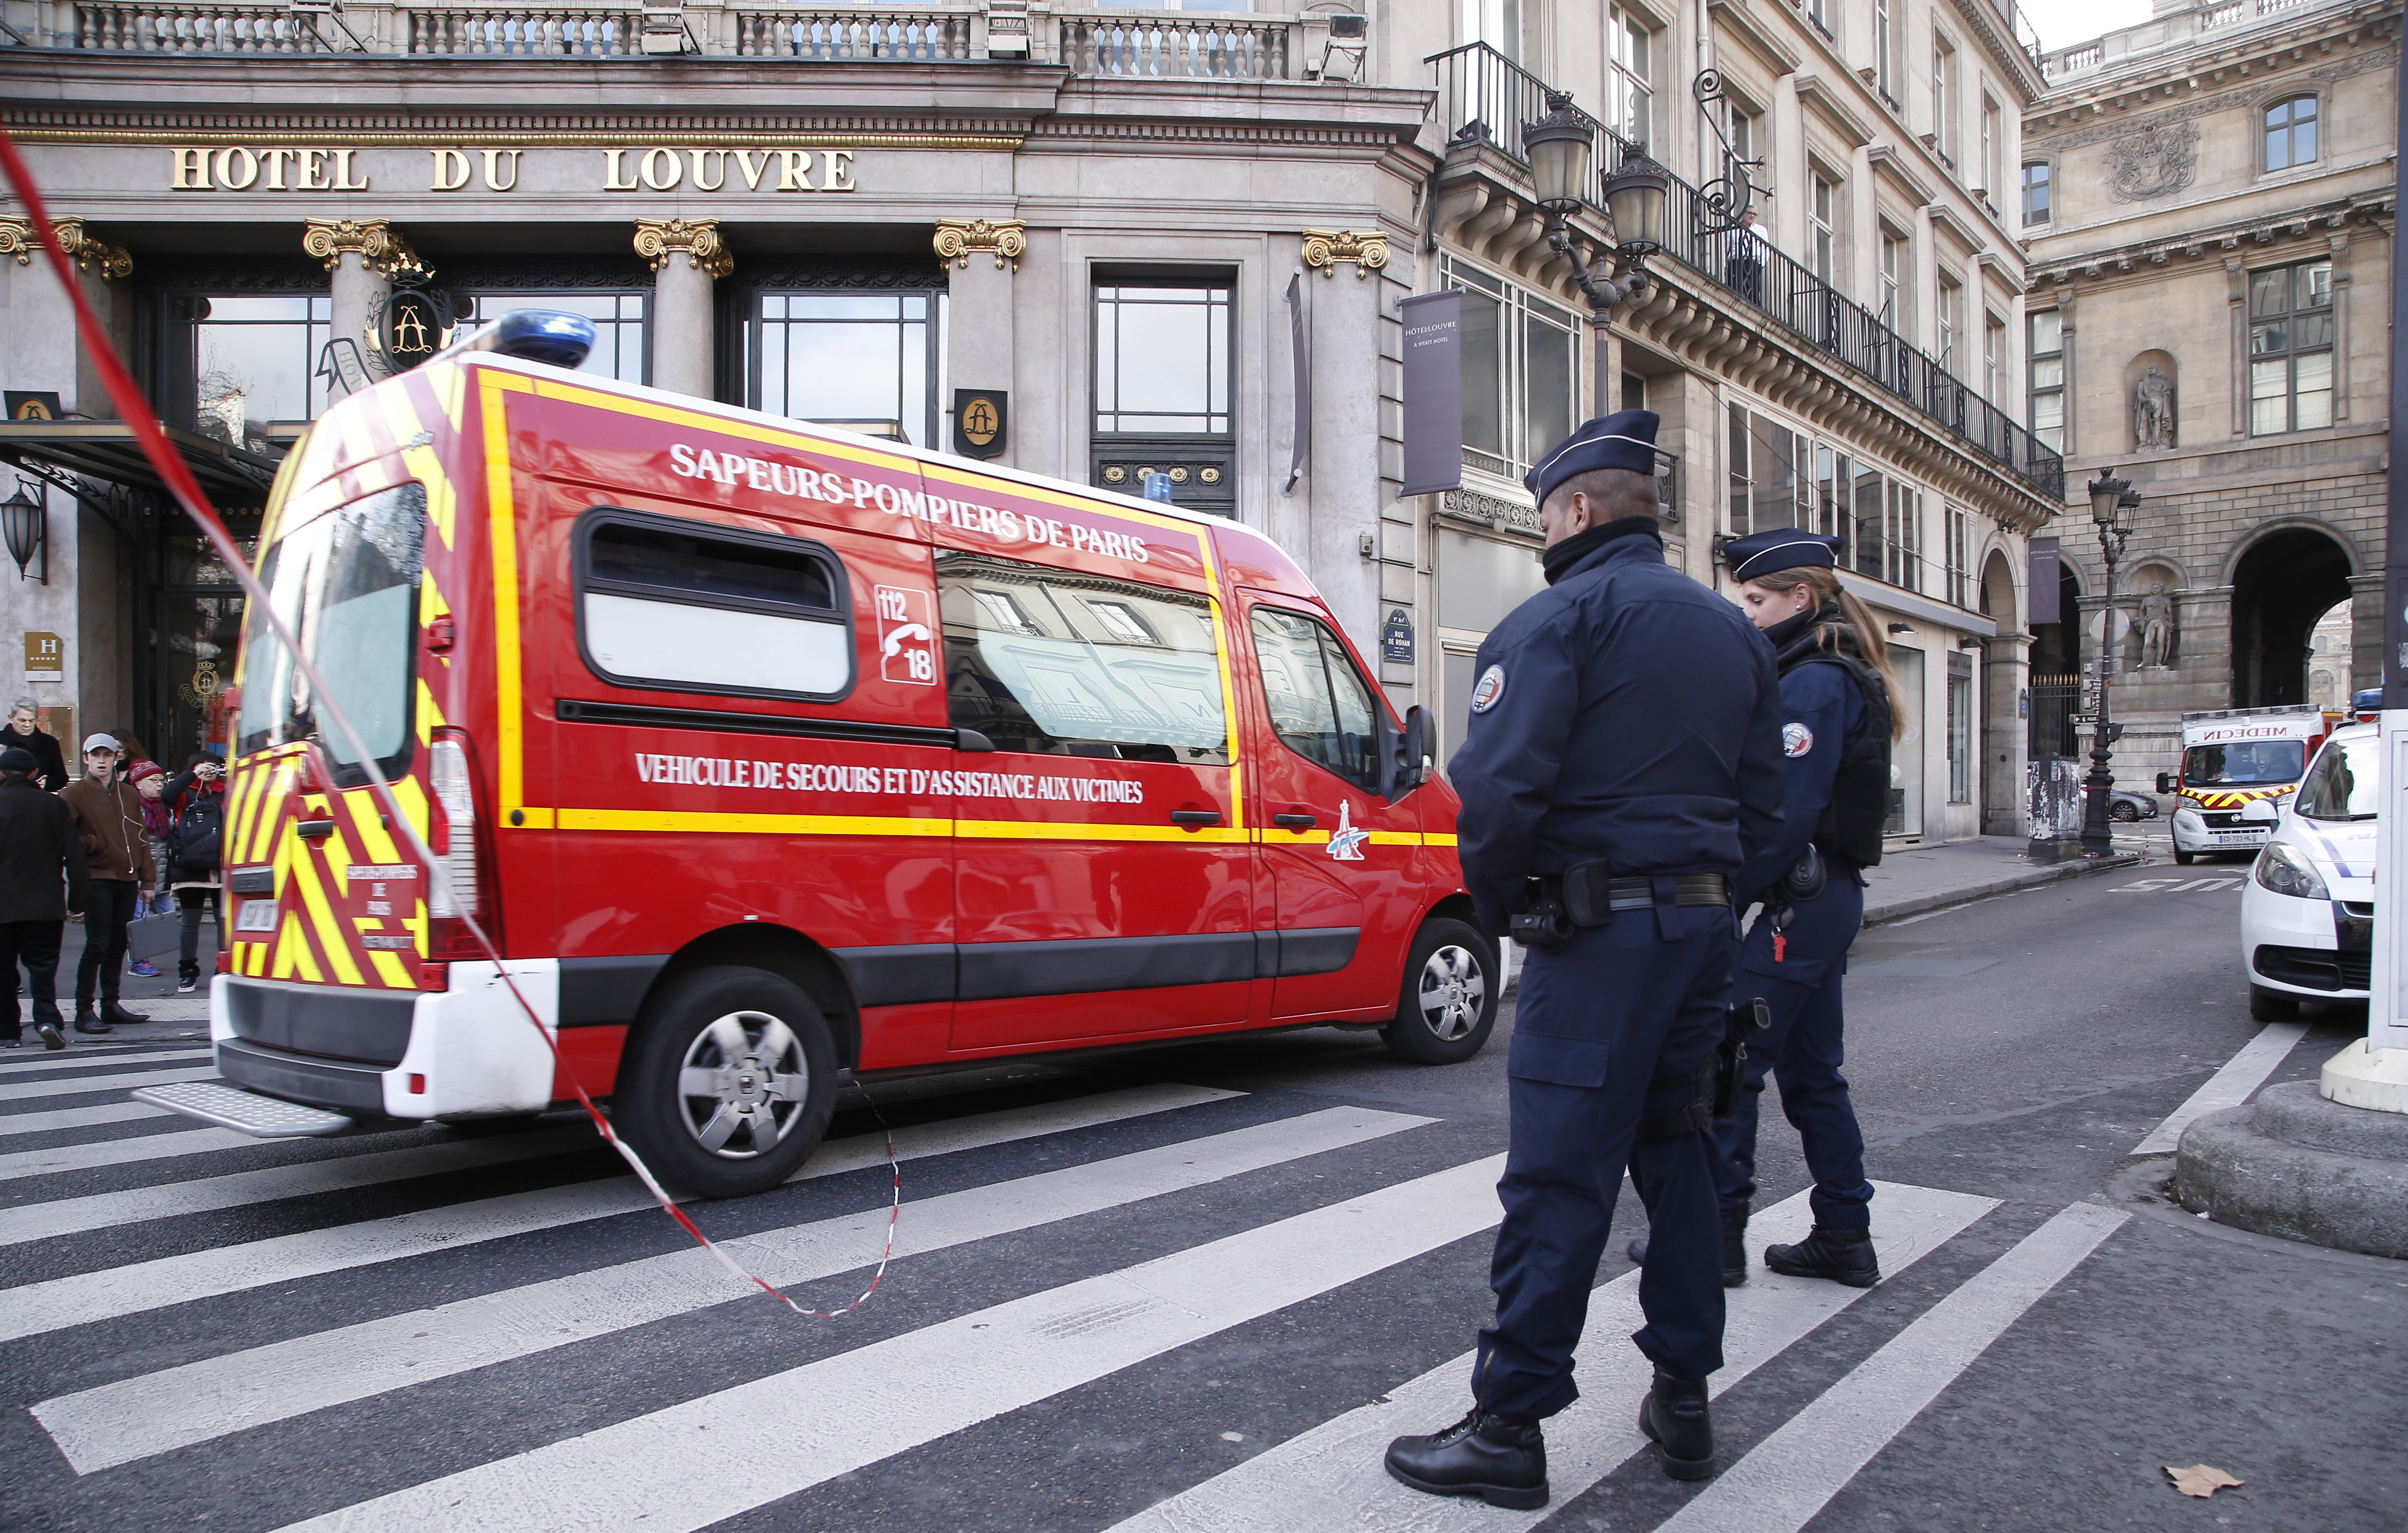 Френски полицаи след въоръжената атака в Лувъра